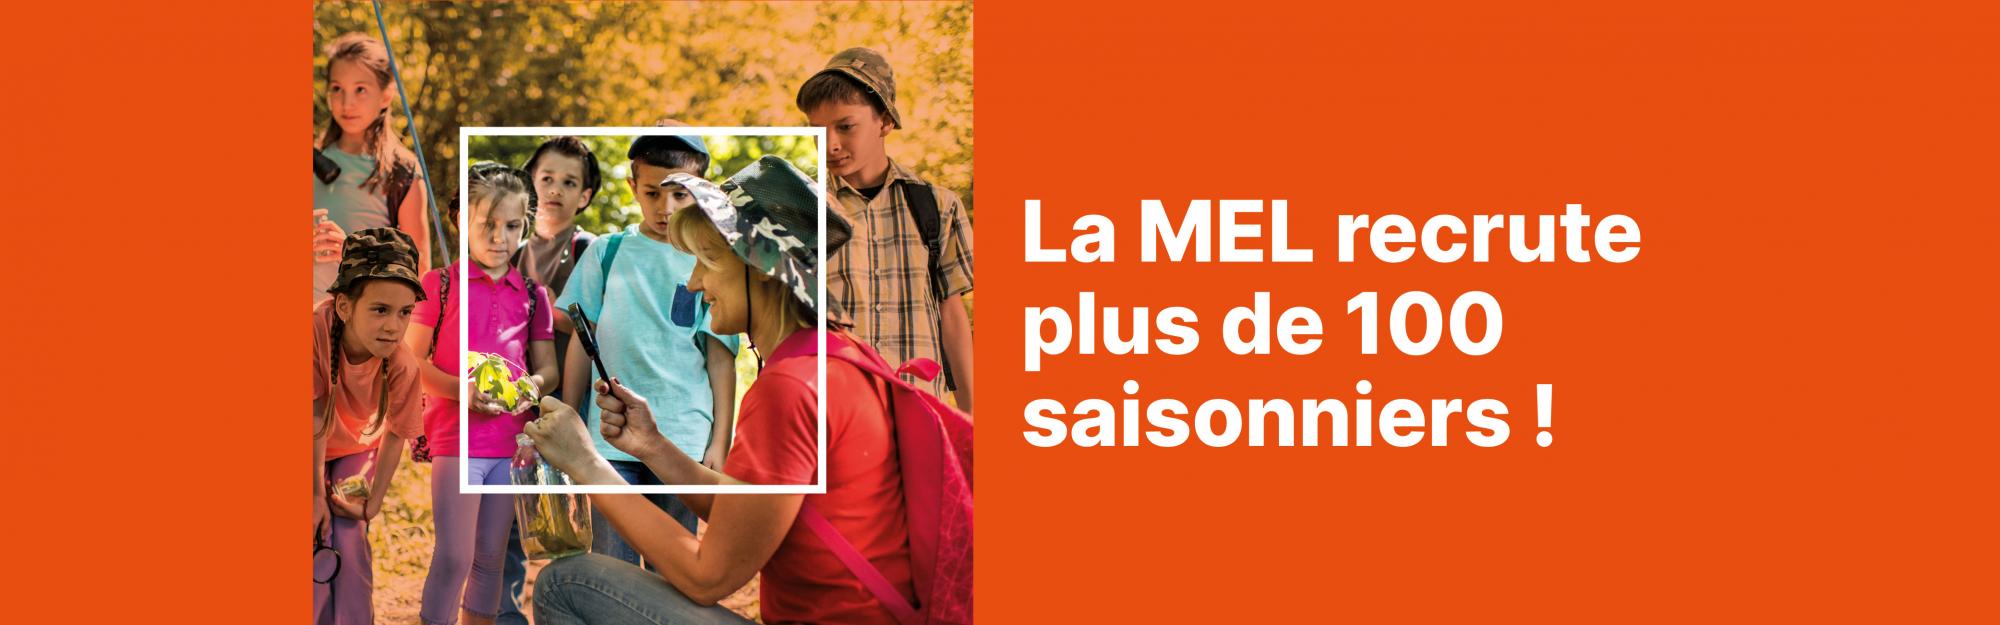 La MEL recrute plus de 100 saisonniers pour ses parcs, relais et espaces de Nature